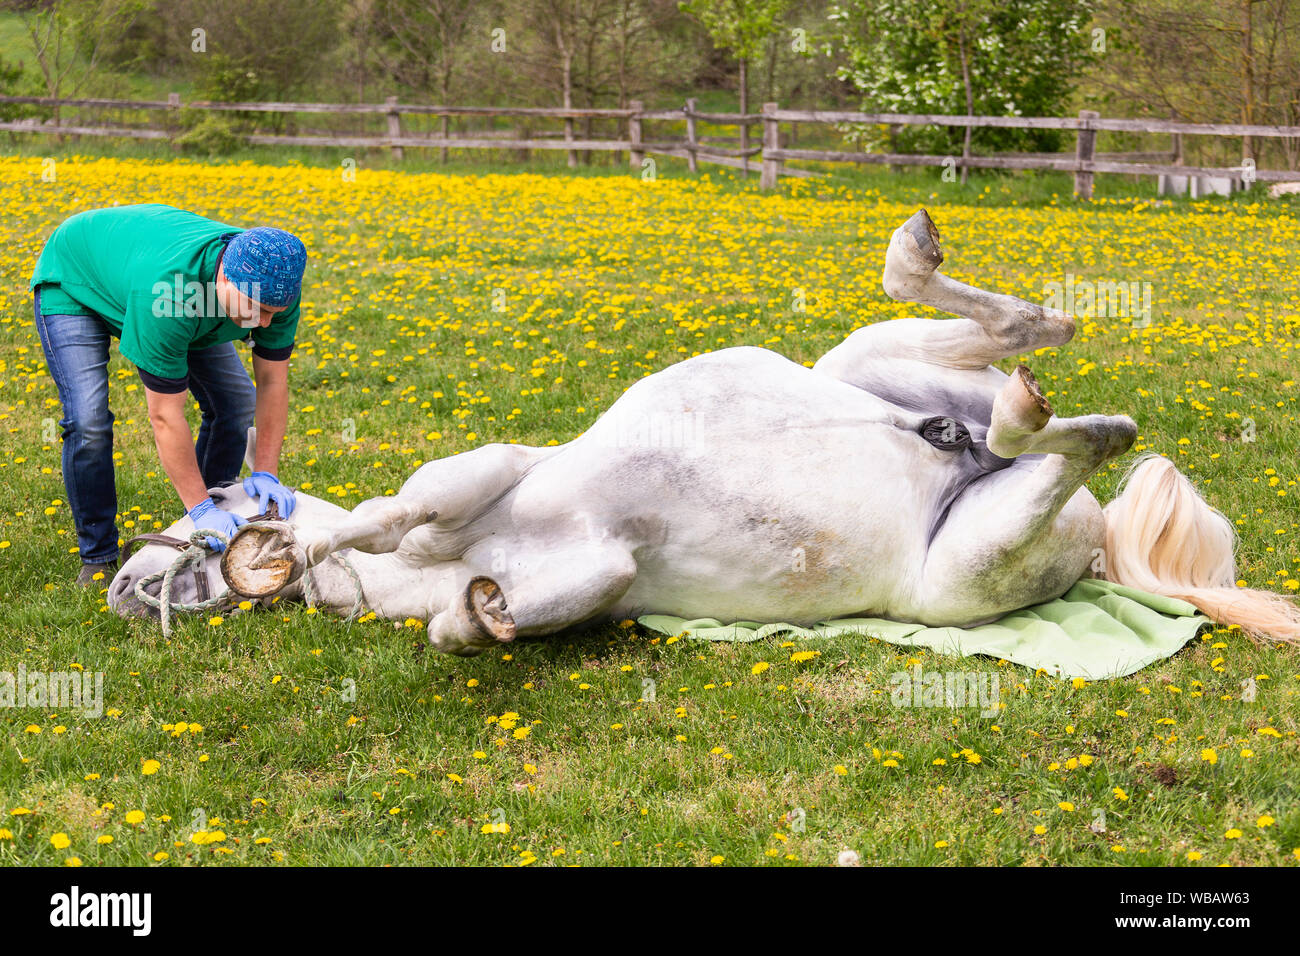 Lipizzan. La castration d'un étalon. Le vétérinaire s'occupe du cheval anesthésié. Allemagne Banque D'Images